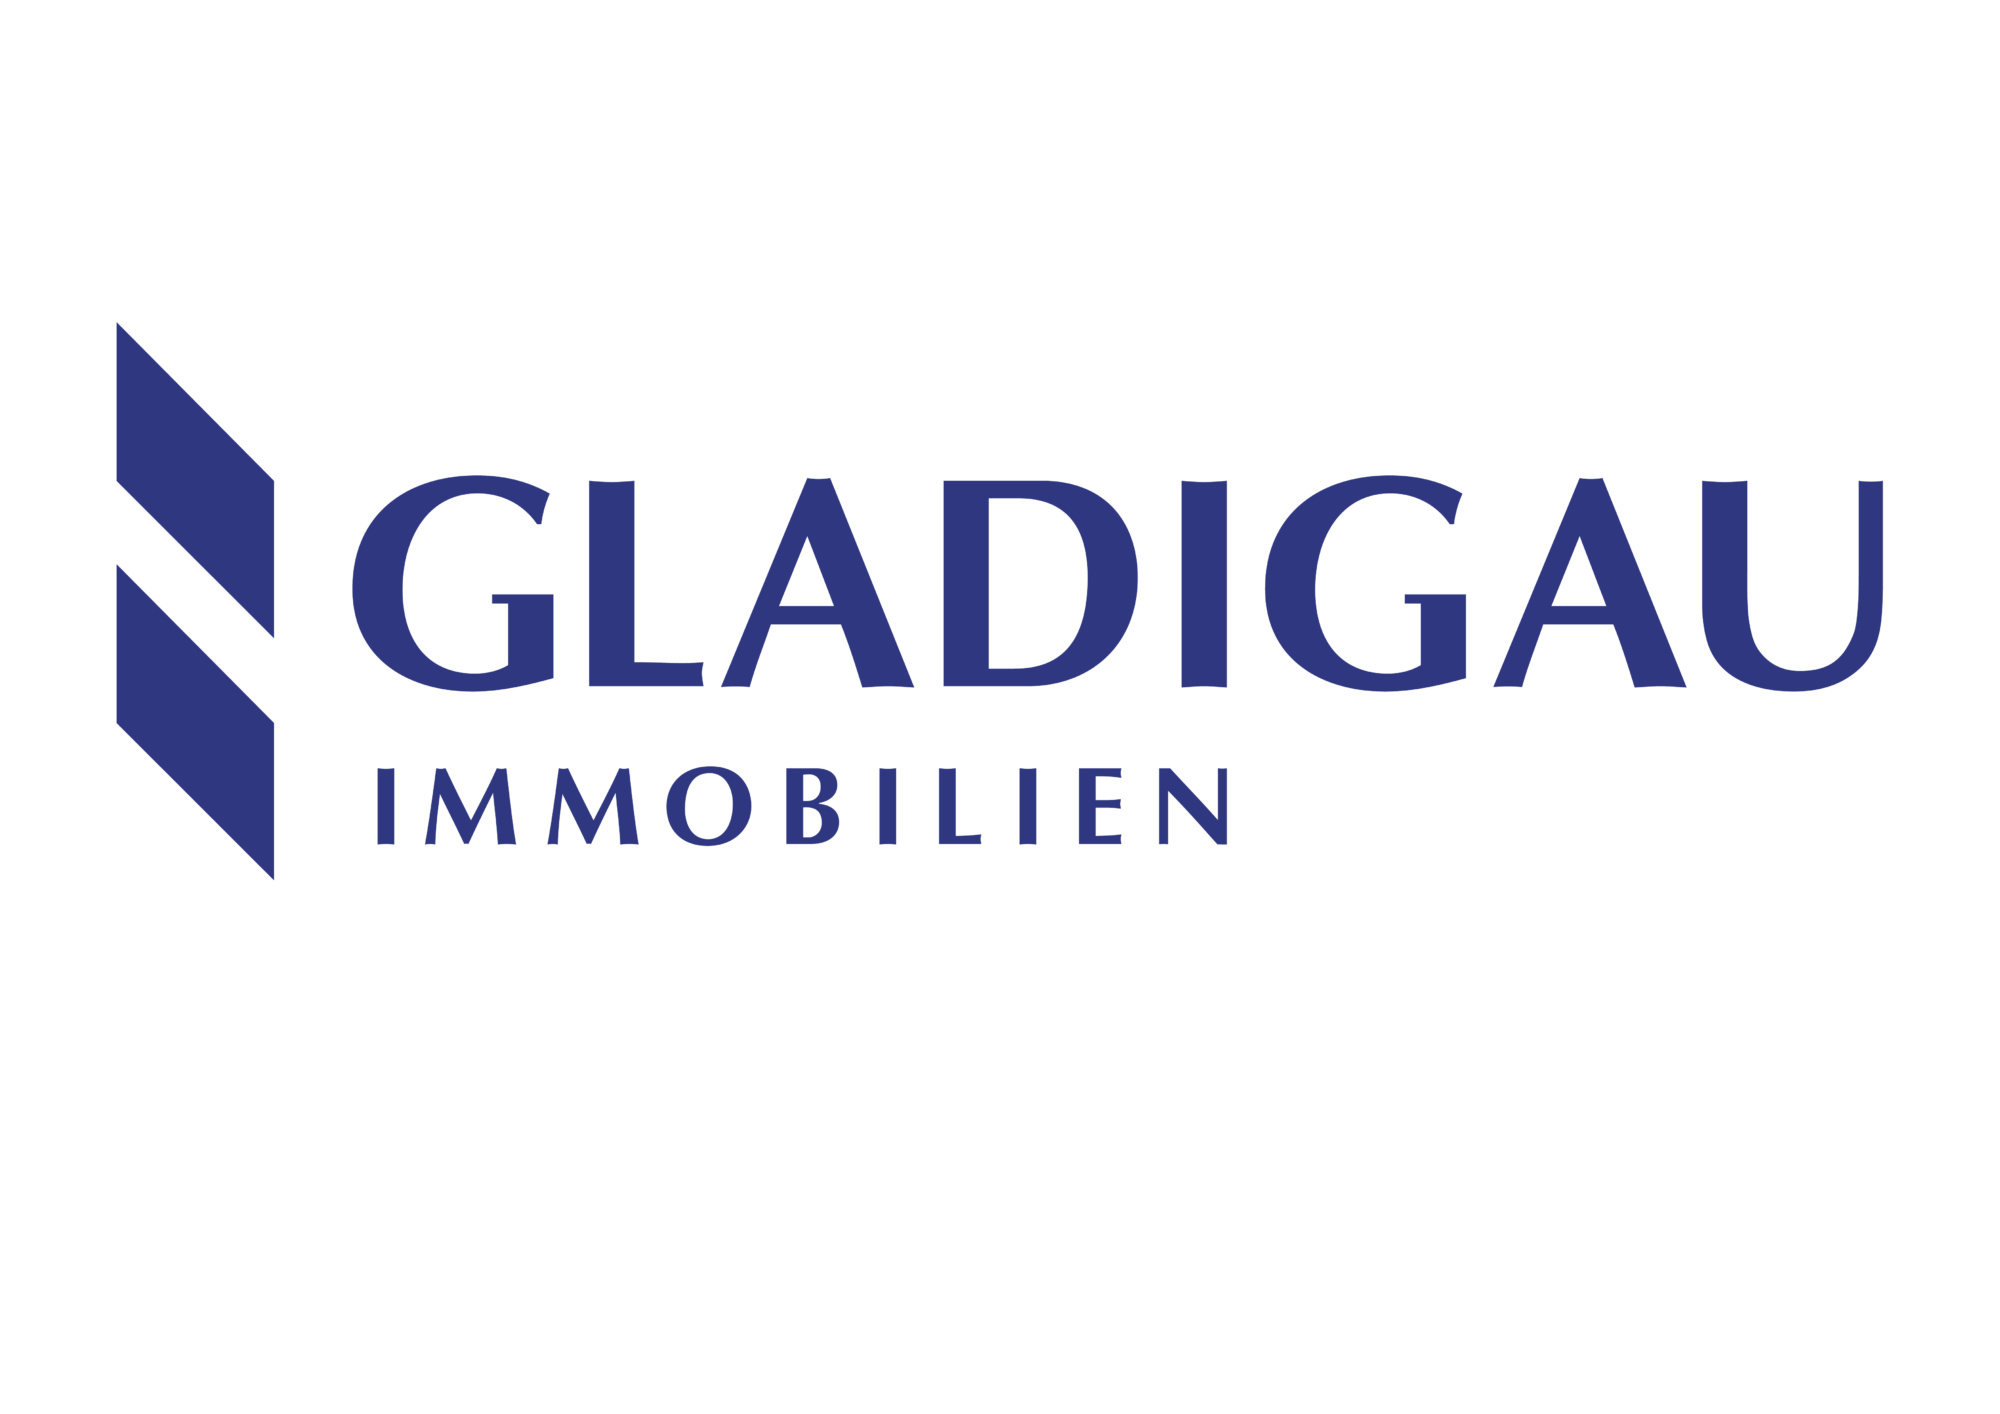 Gladigau logo blau A4 2016 scaled